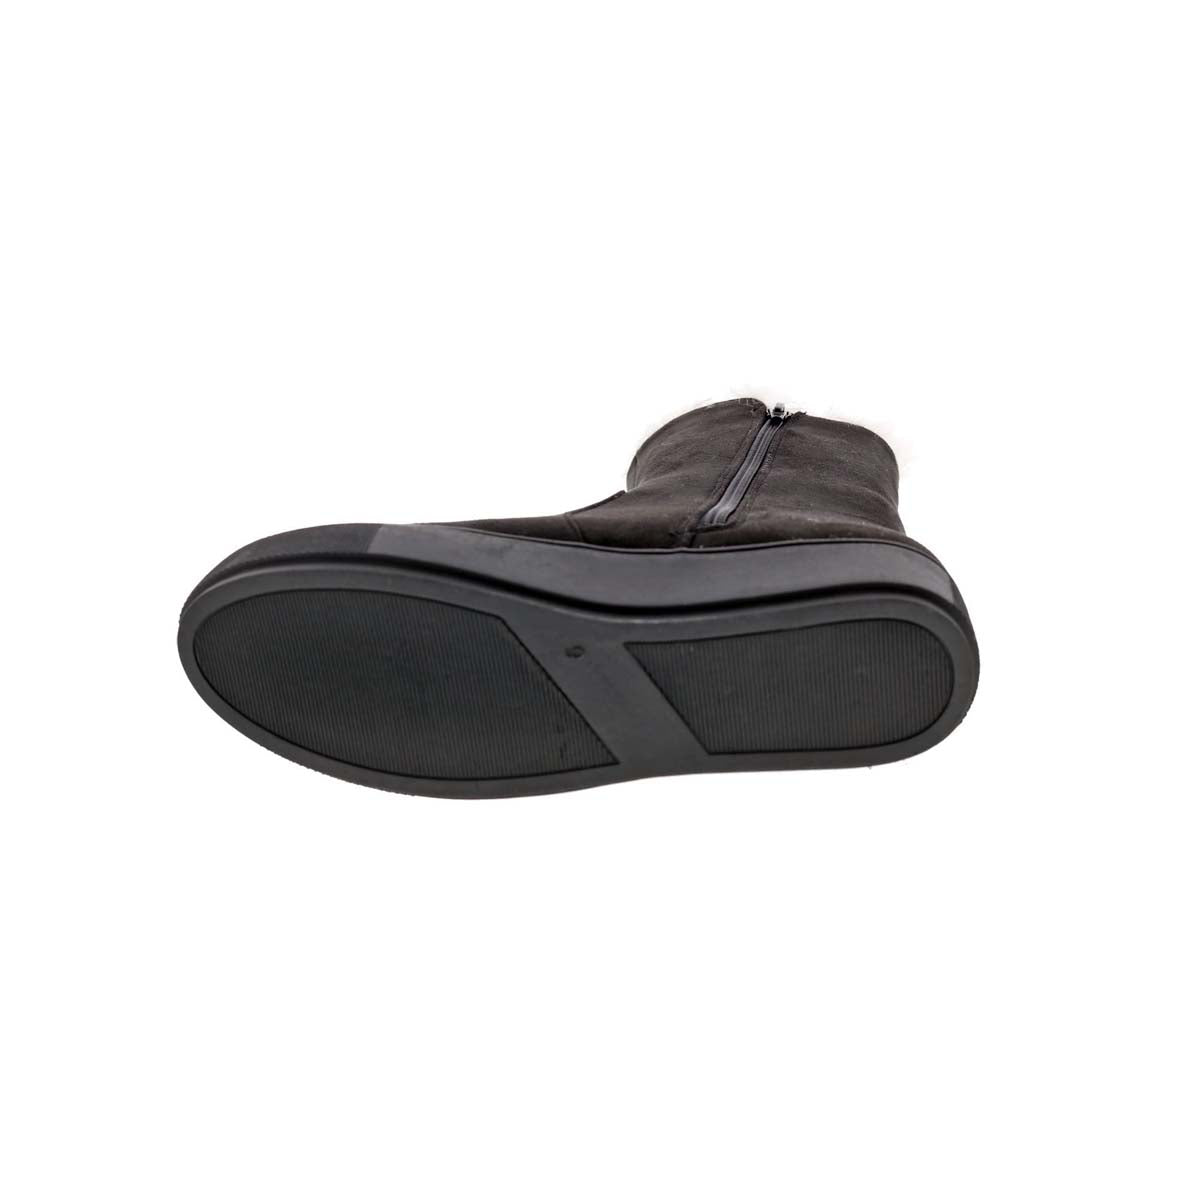 BELLINI FURRY WOMEN ZIPPER BOOTS IN BLACK MICROSUEDE/FAUX FUR - TLW Shoes